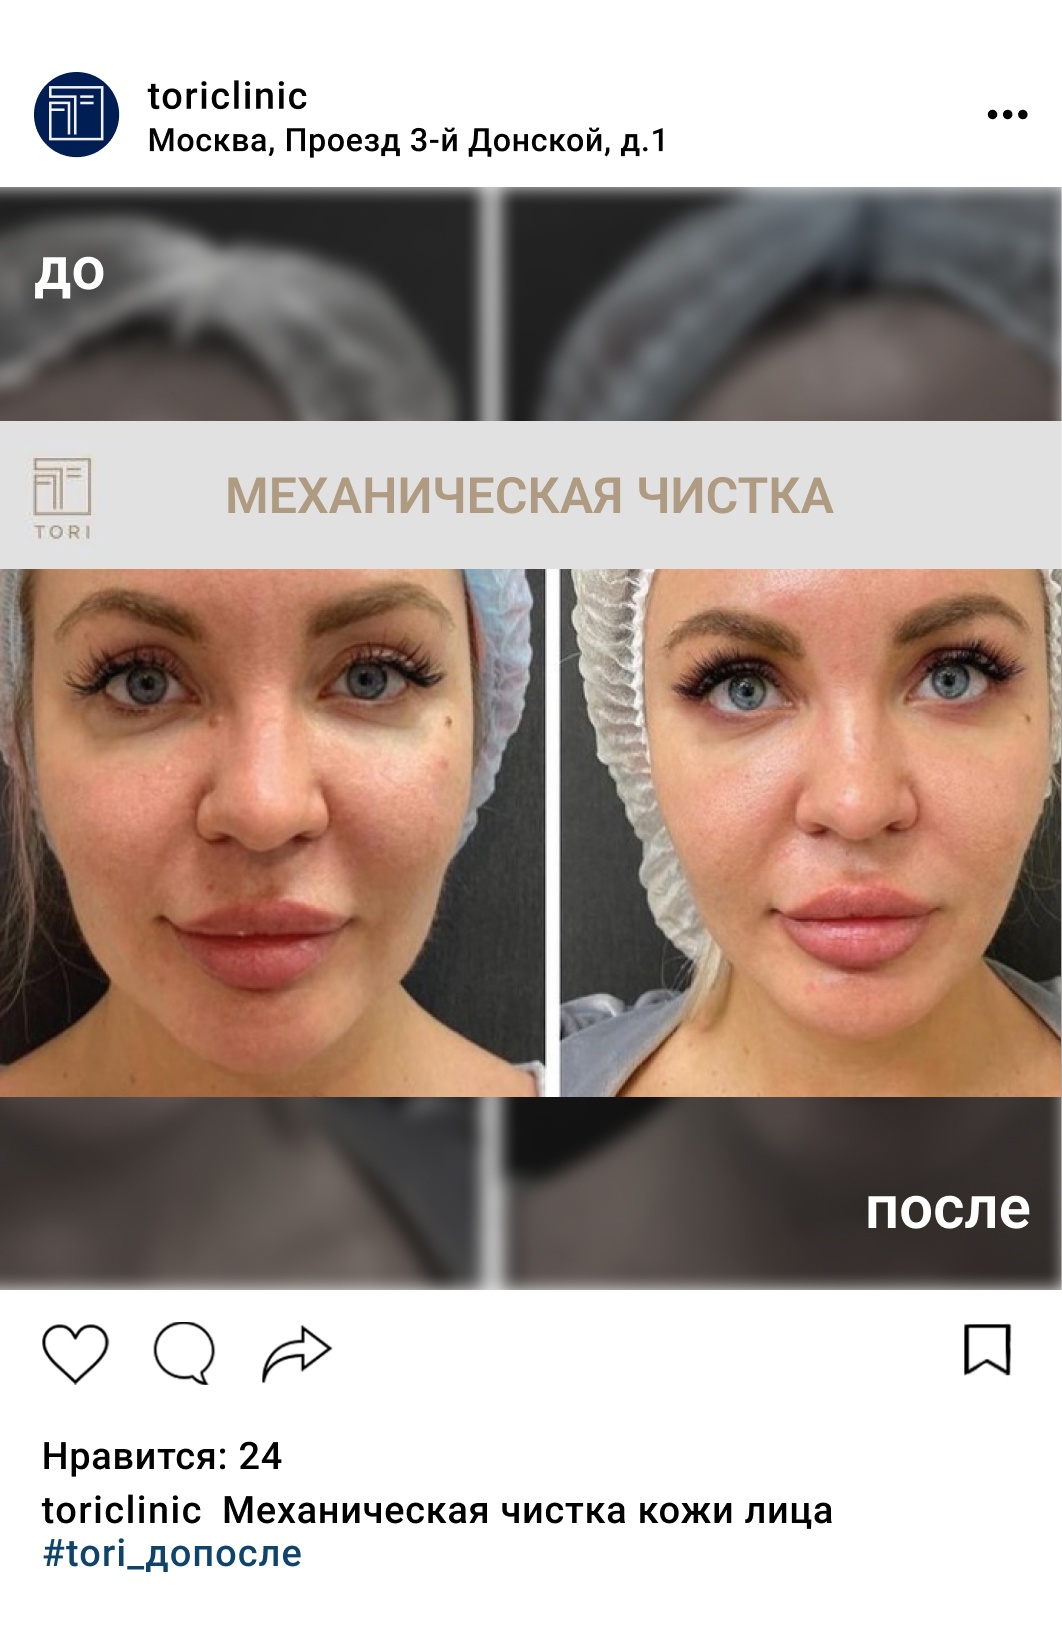 Сделать механическую чистку лица у косметолога в Москве - цены